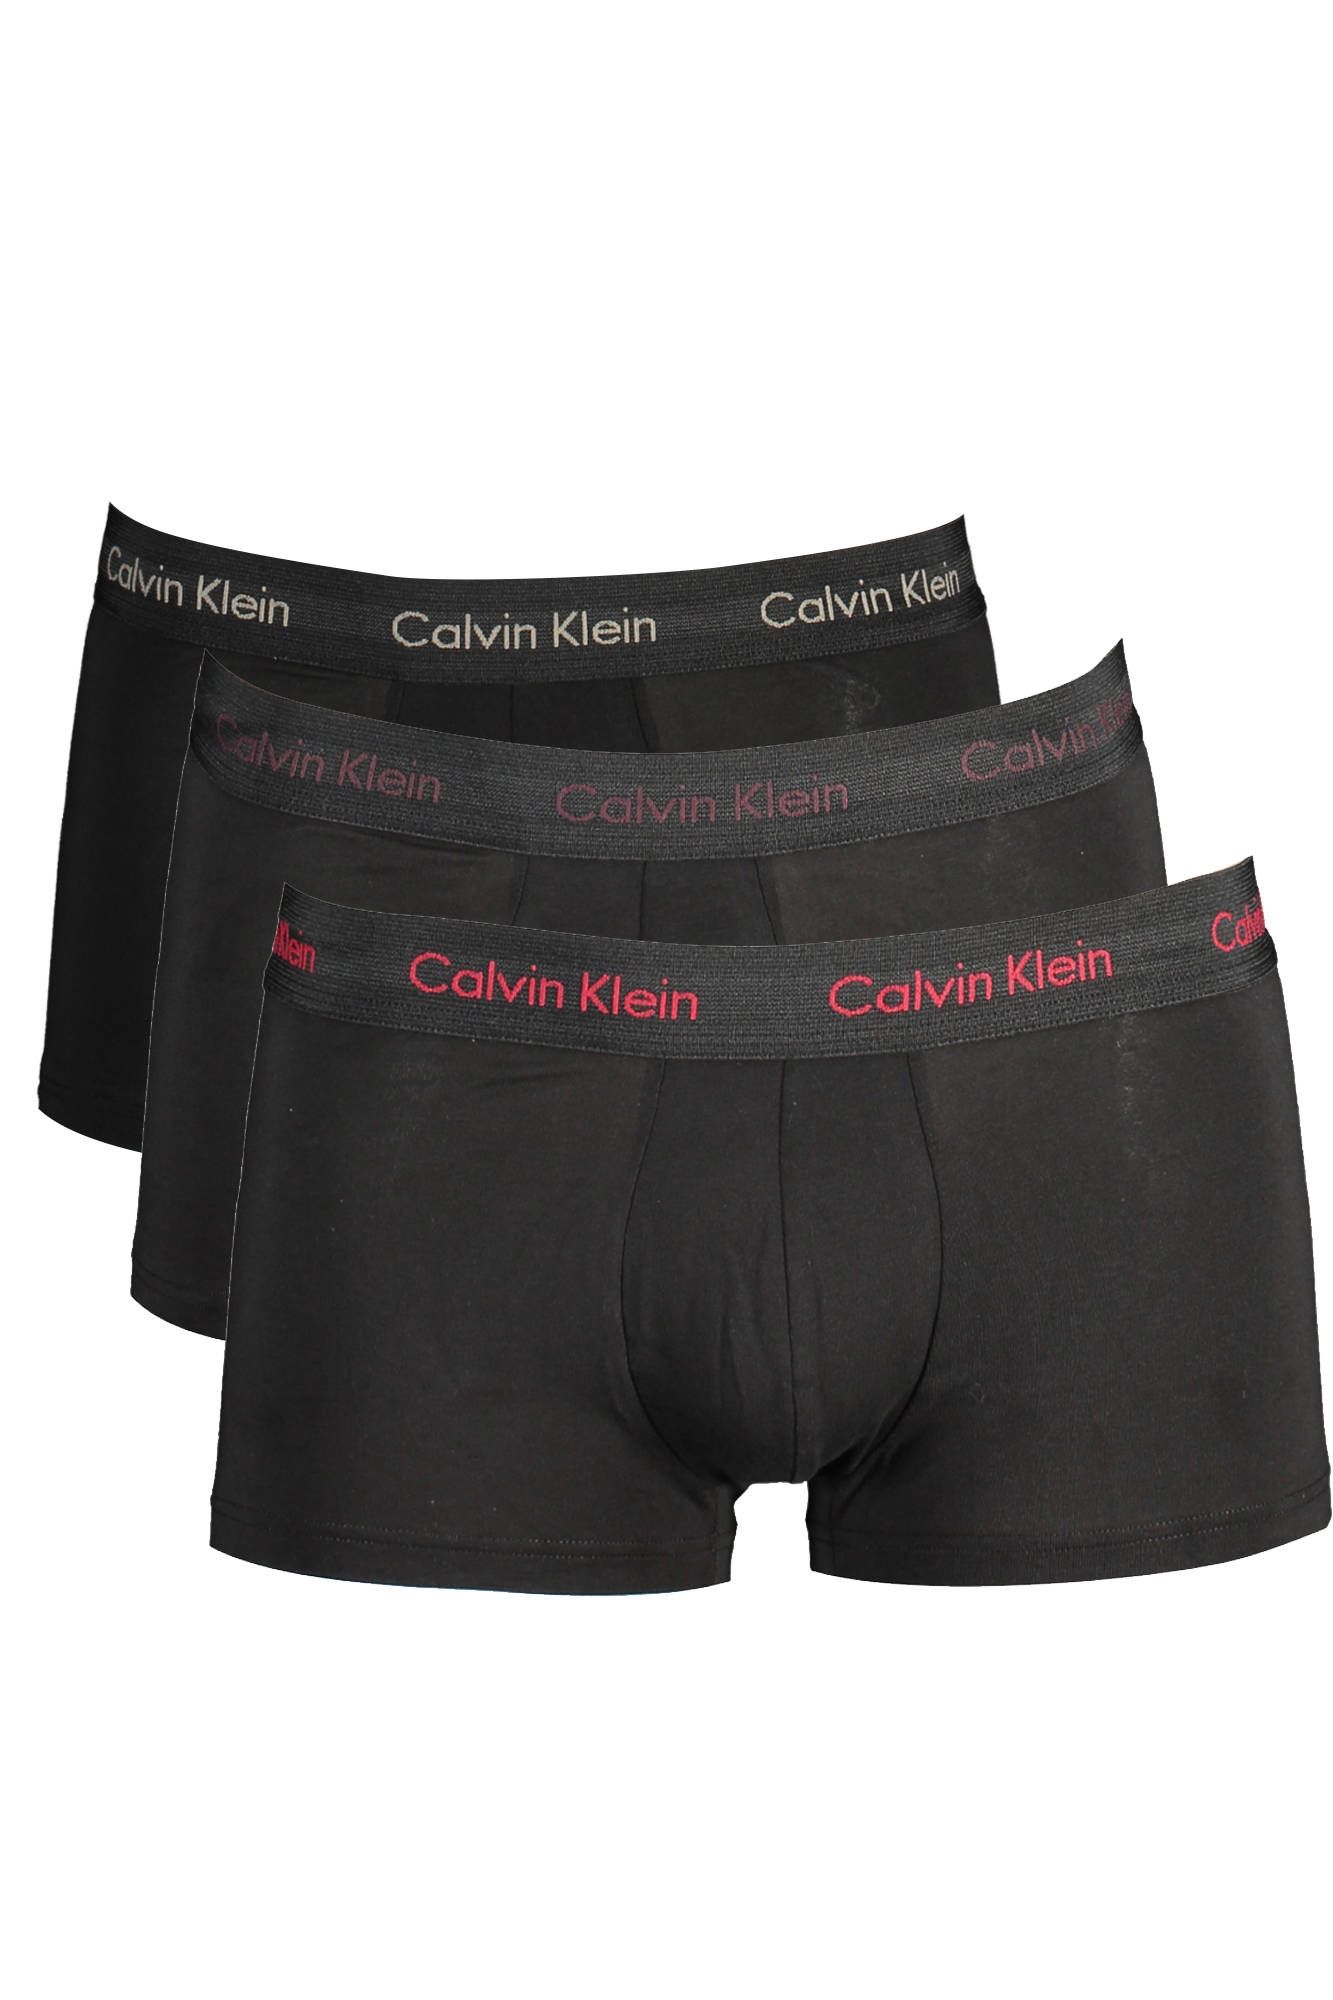 Black Cotton Underwear